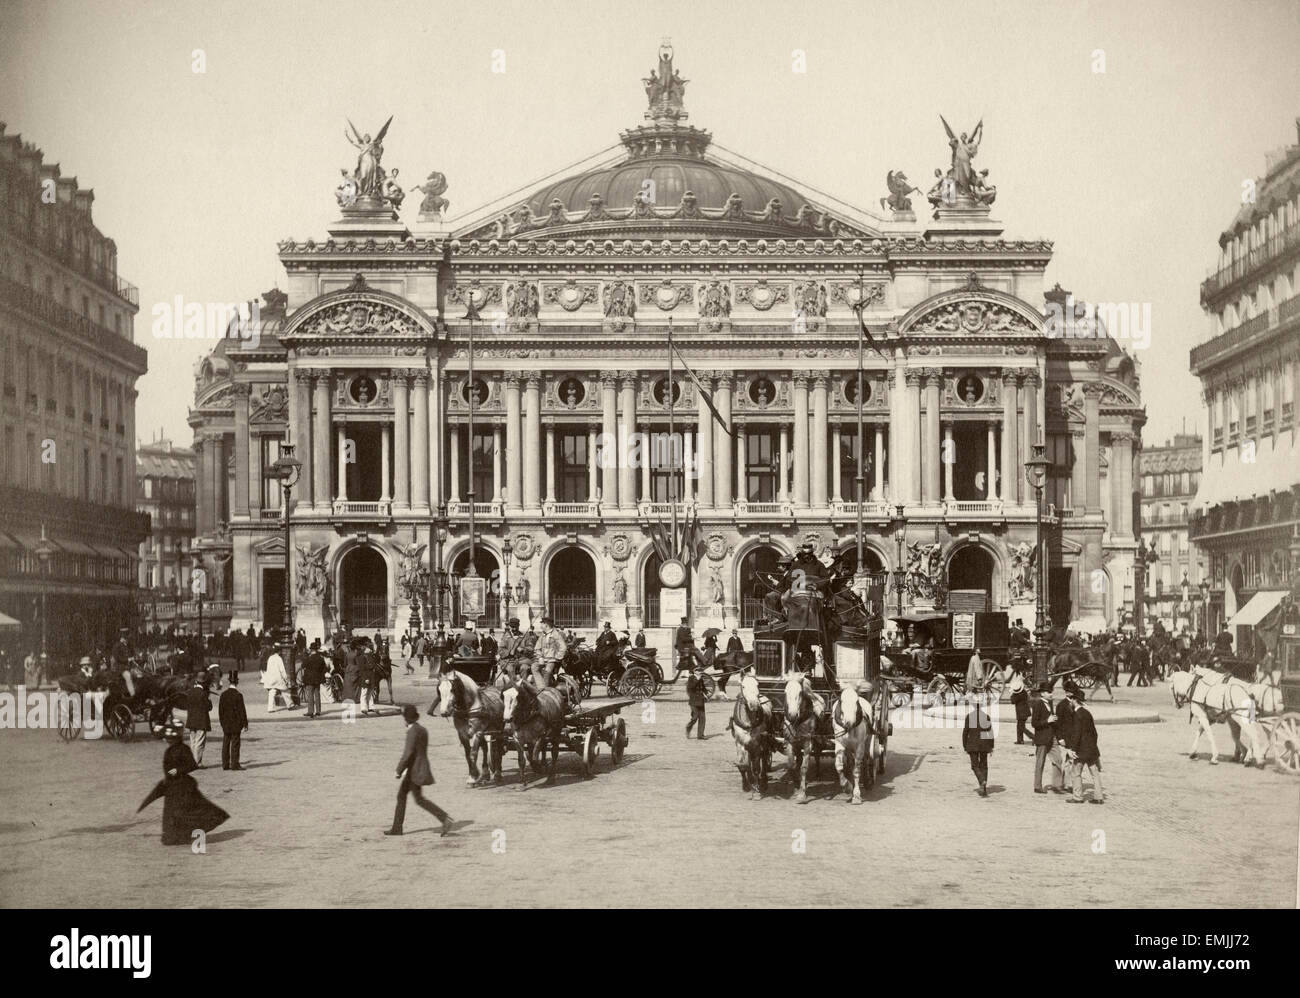 L’Opera, Académie Nationale de Musique, Paris, France, Albumen print, circa 1890 Stock Photo